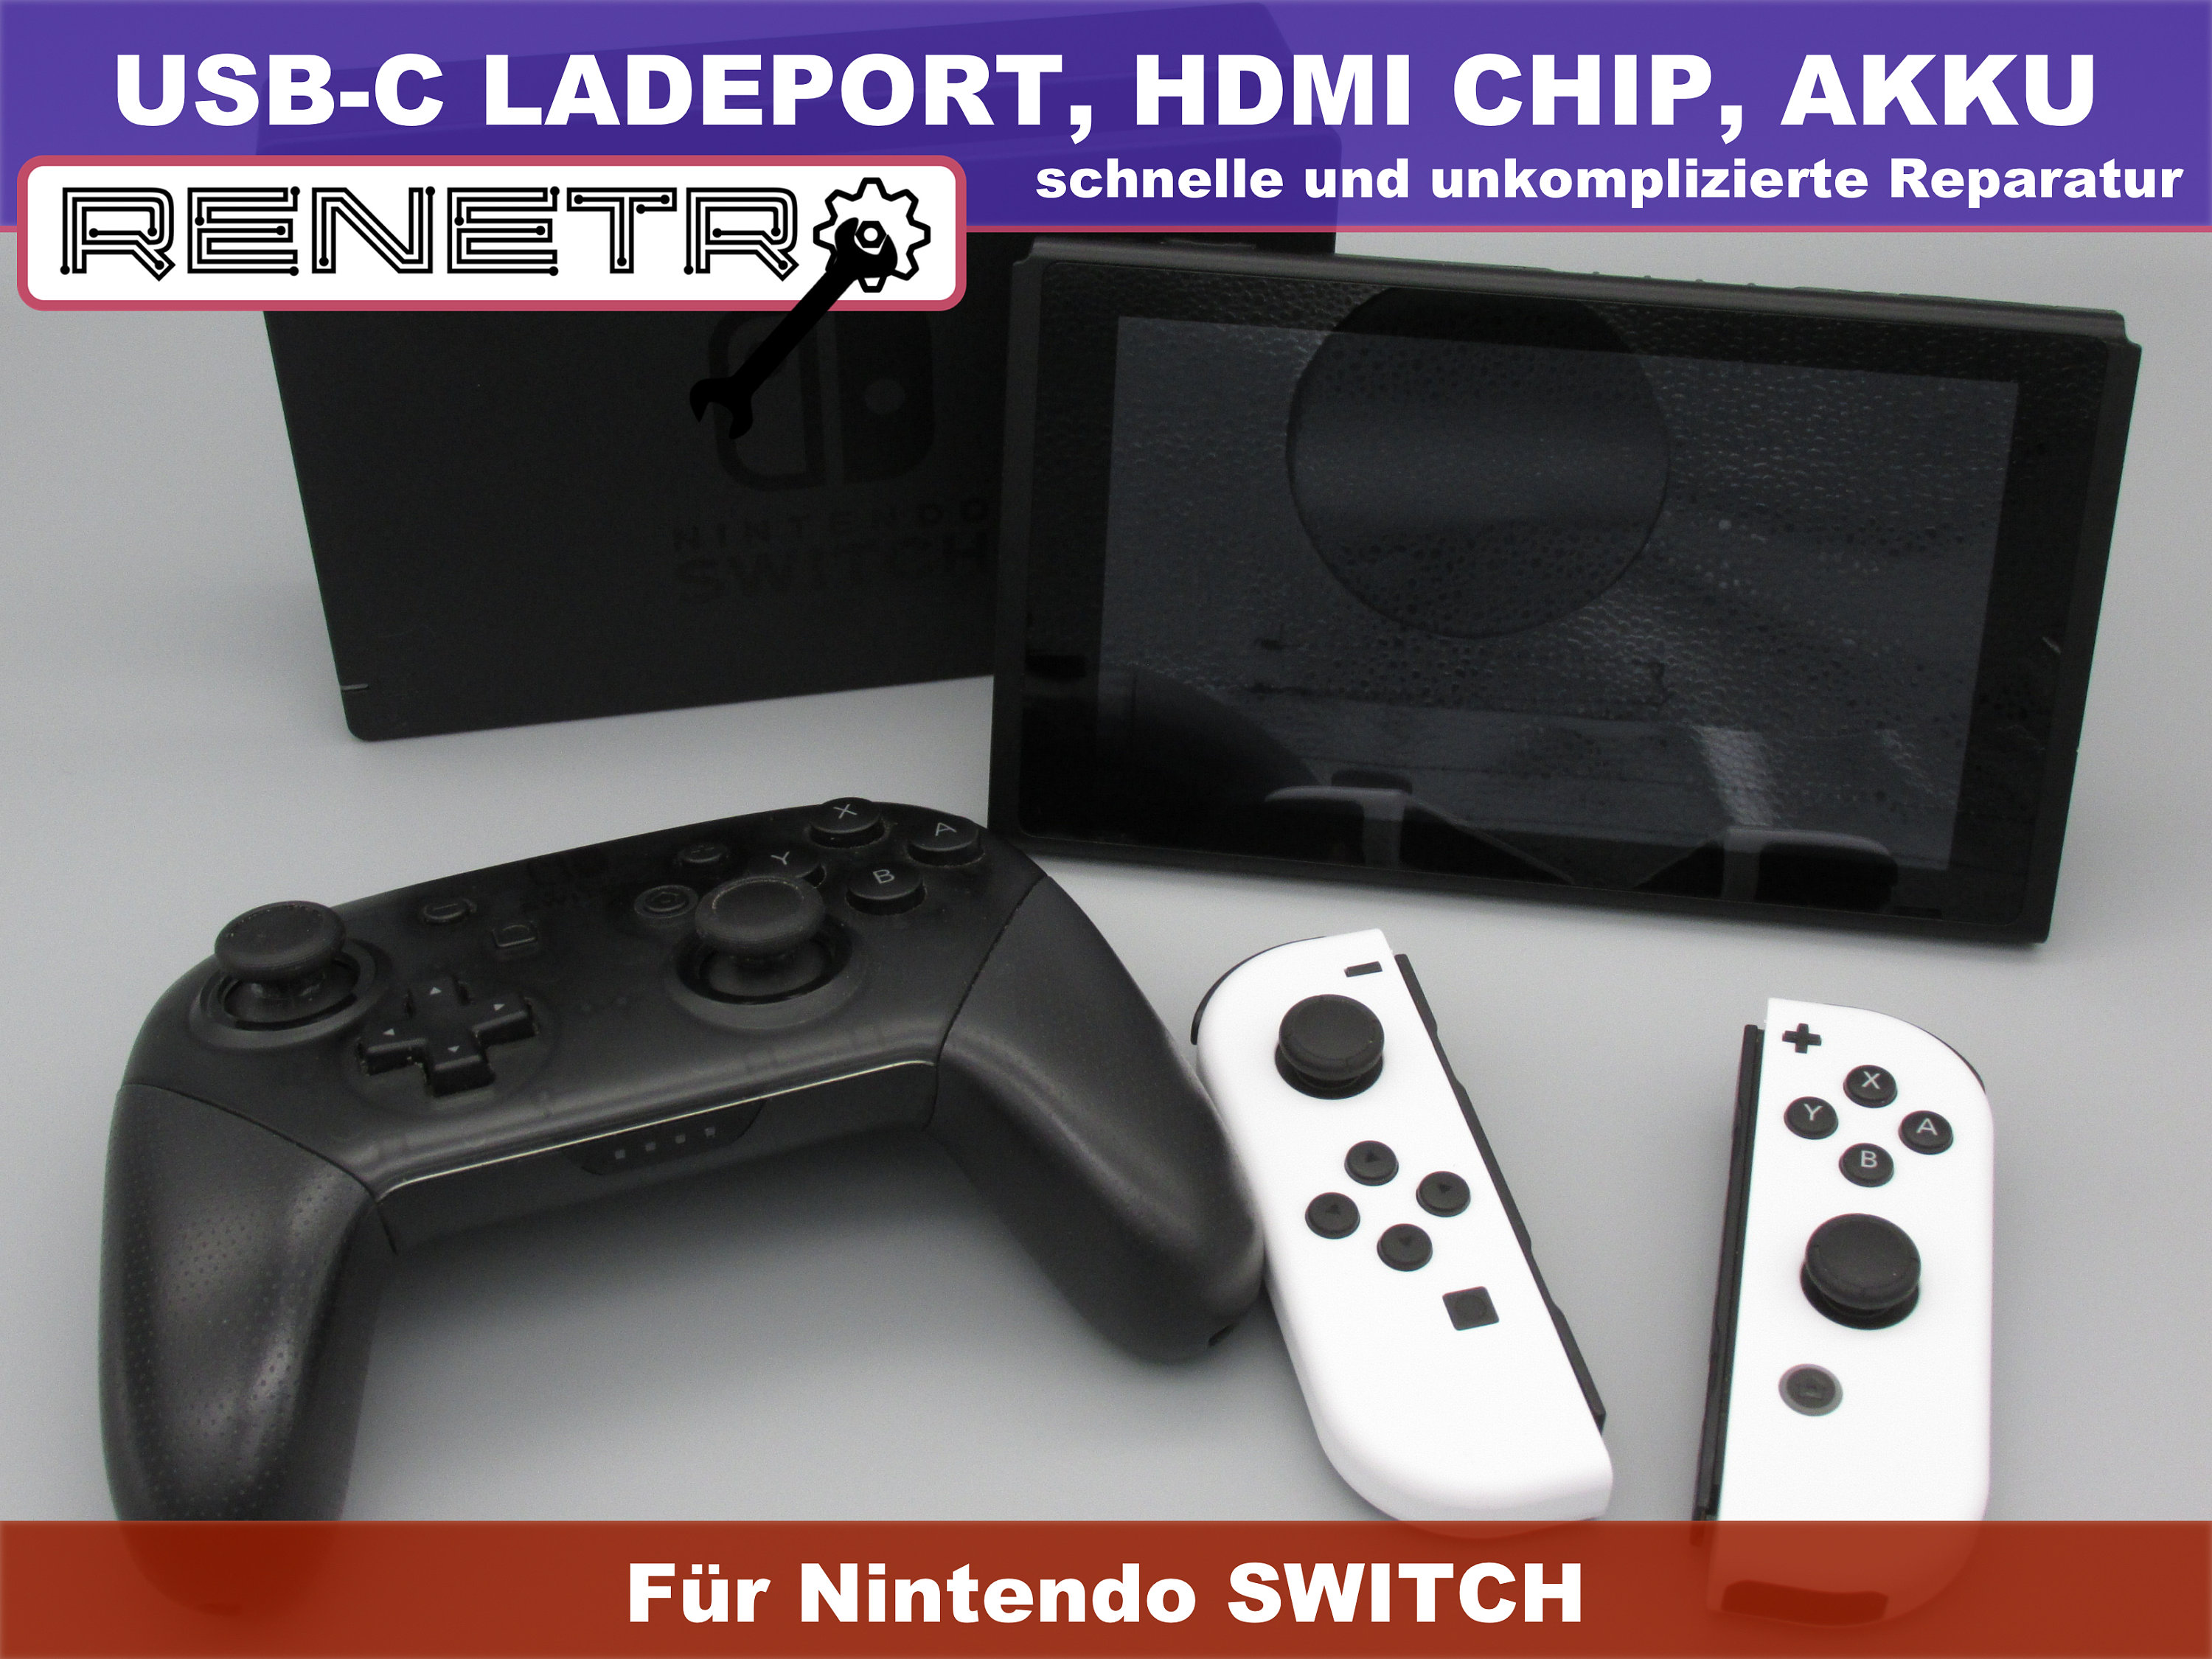 Spielekonsole-Akku als Ersatz für Nintendo HDH-003, HDH-A-BPHAT-C0